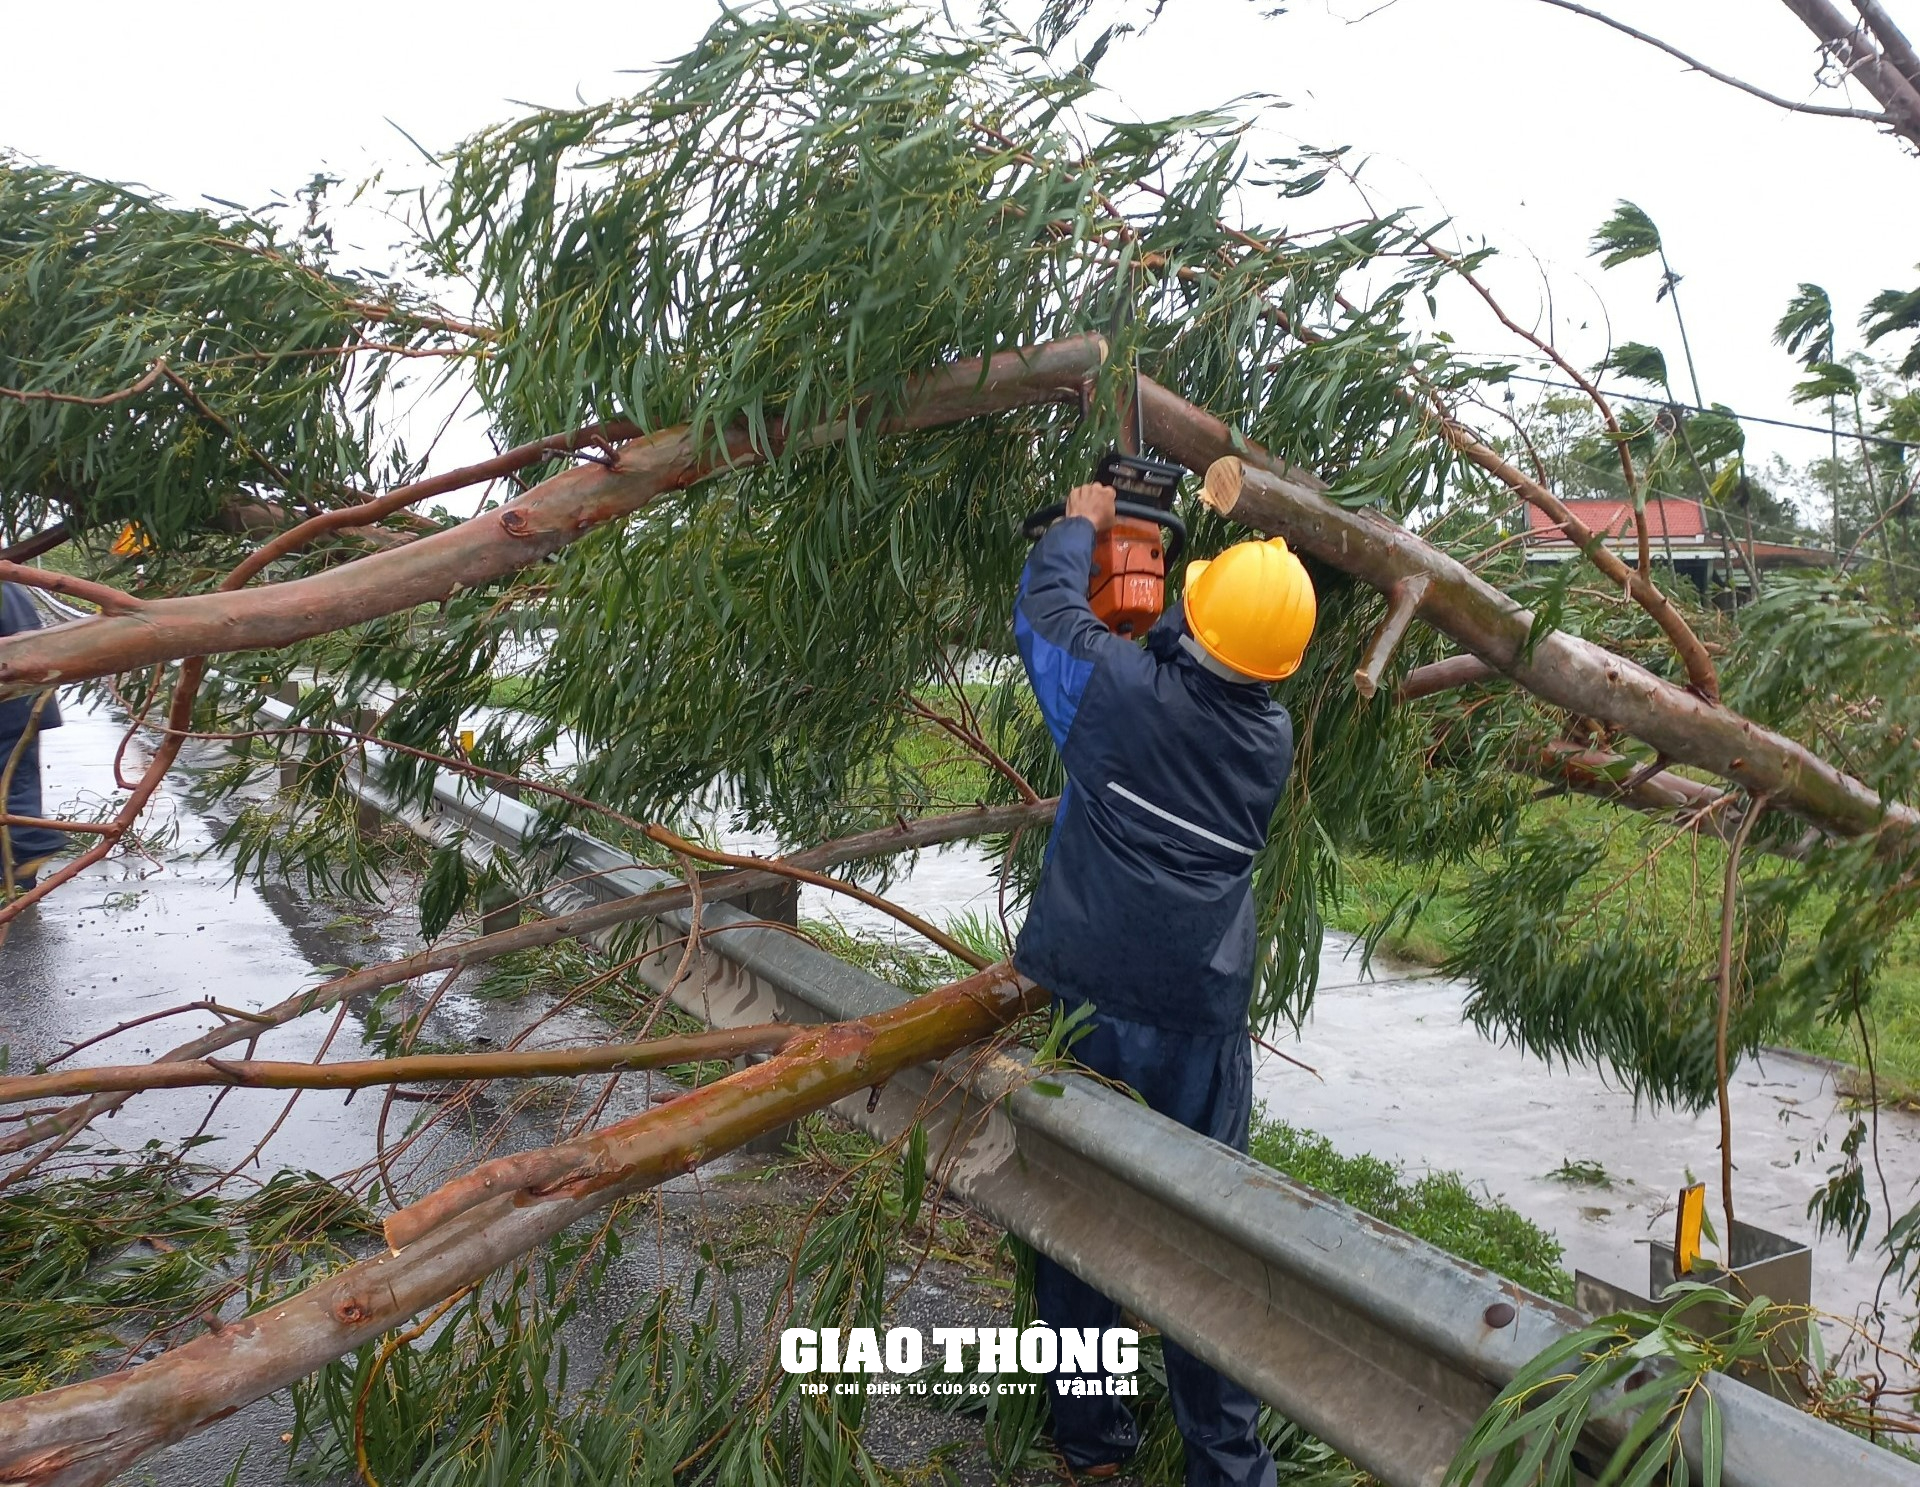 Ghi ở tâm bão Đà Nẵng-Quảng Nam: Cây xanh ngã đổ la liệt, gây ách tắc giao thông - Ảnh 2.